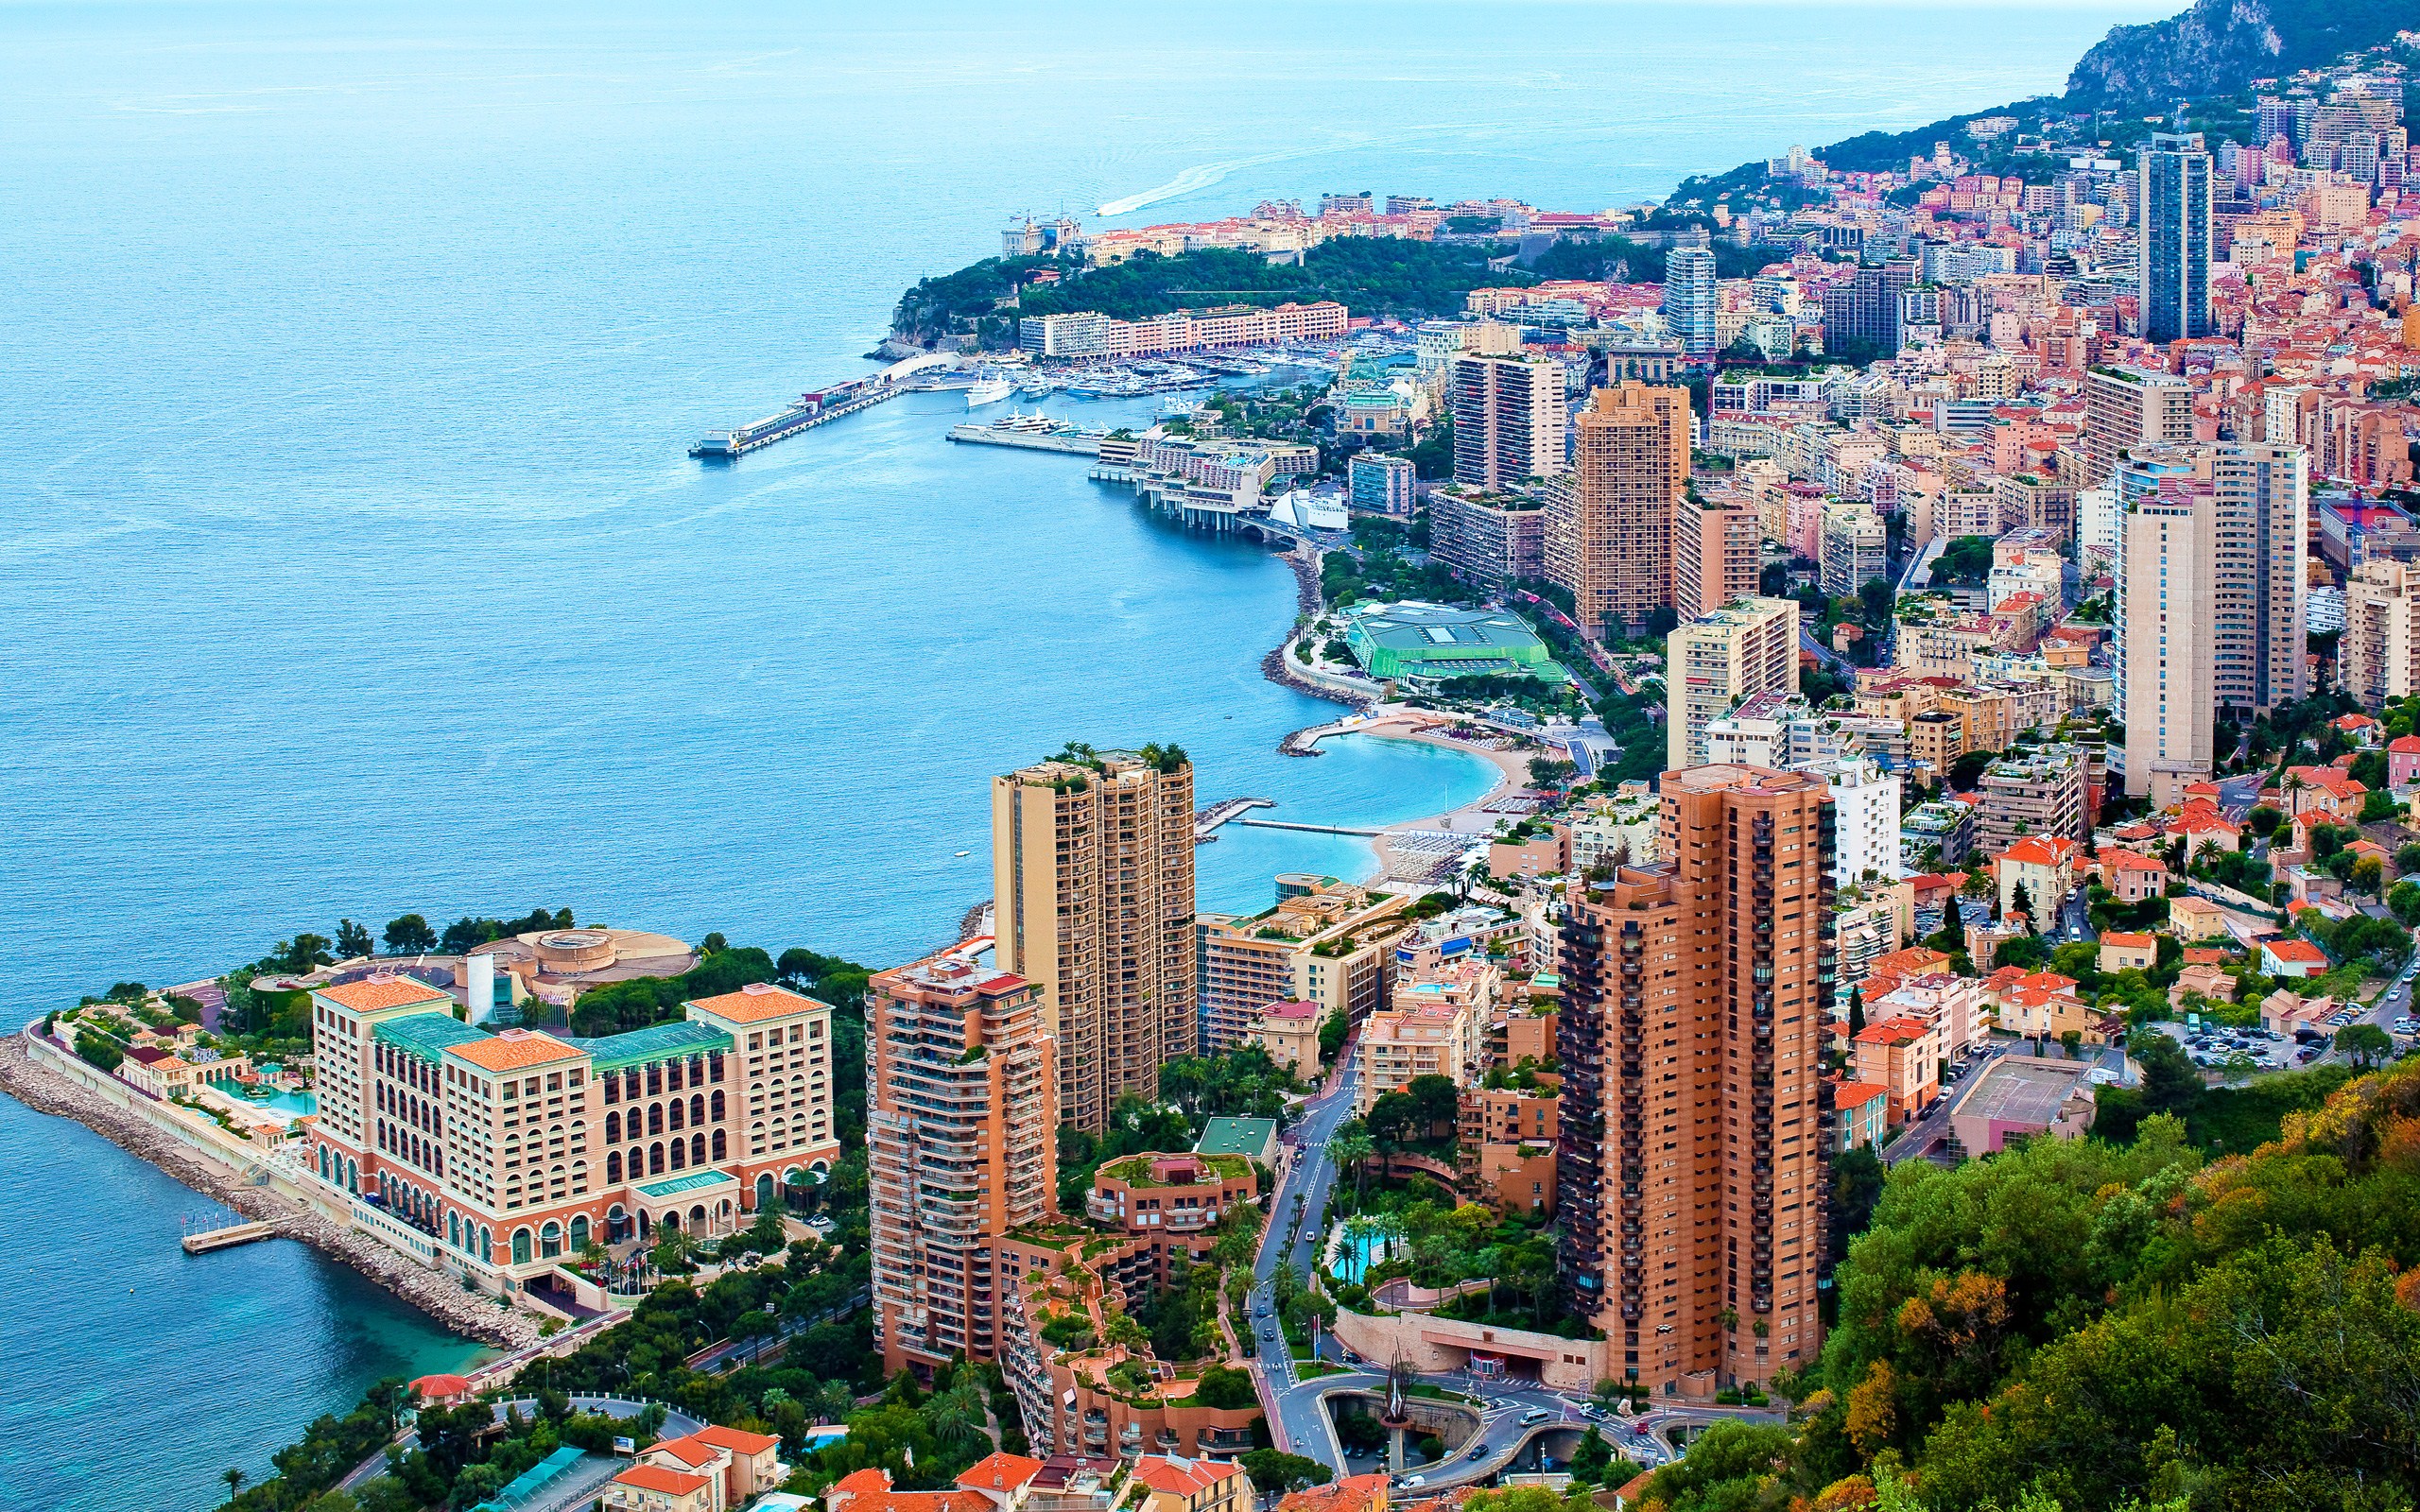 Monaco #6